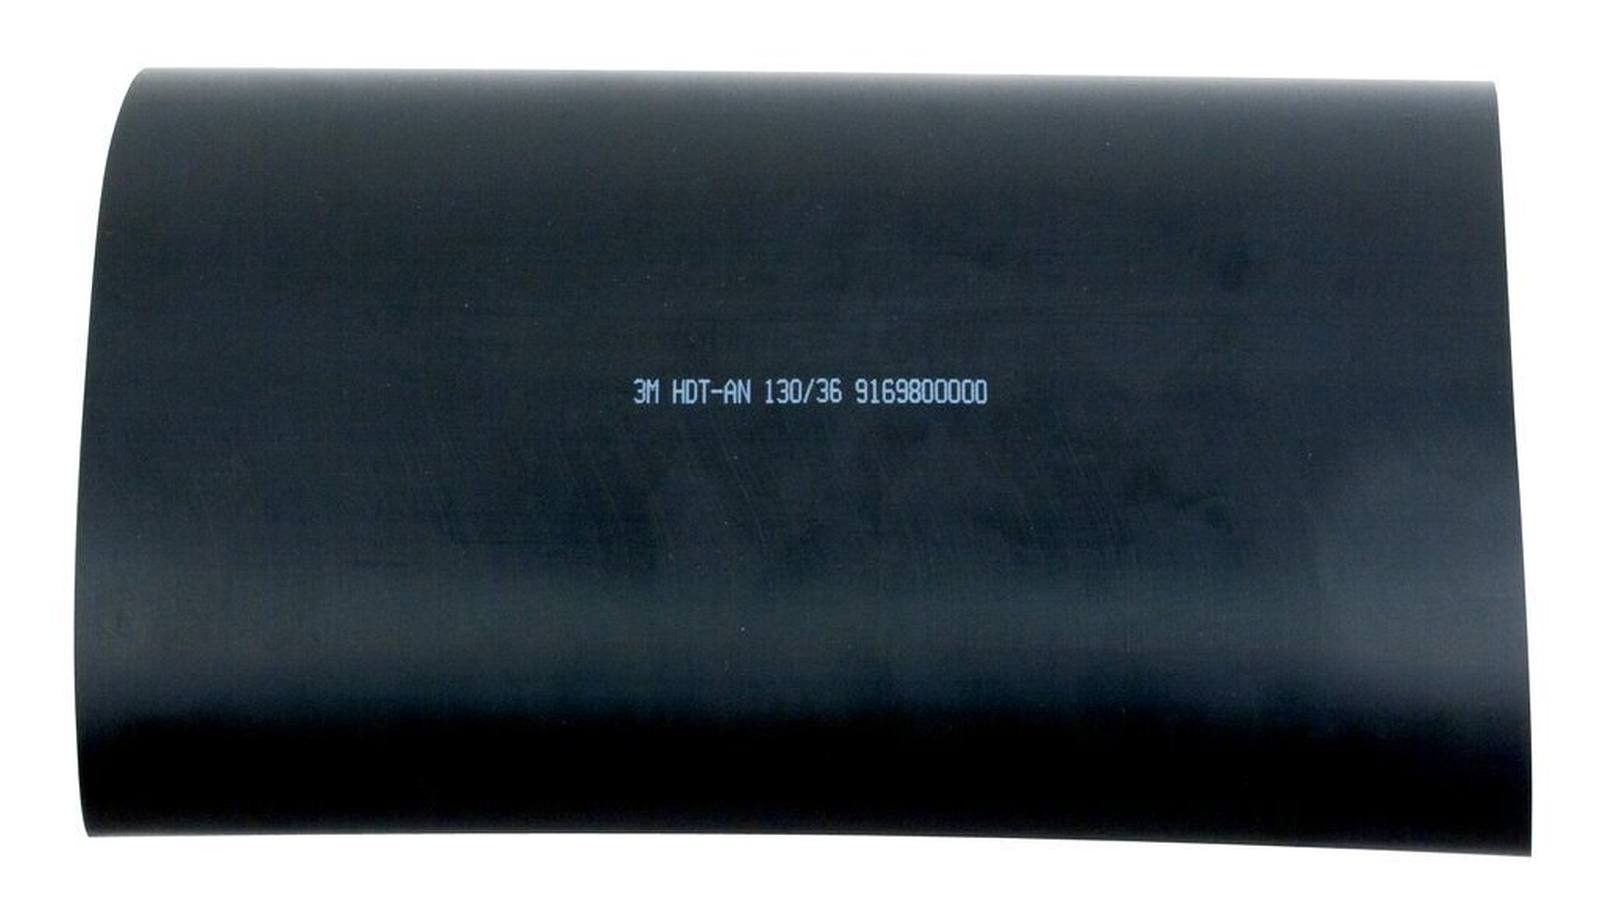  3M HDT-AN Paksuseinäinen lämpökutisteputki liimalla, musta, 130/36 mm, 1 m